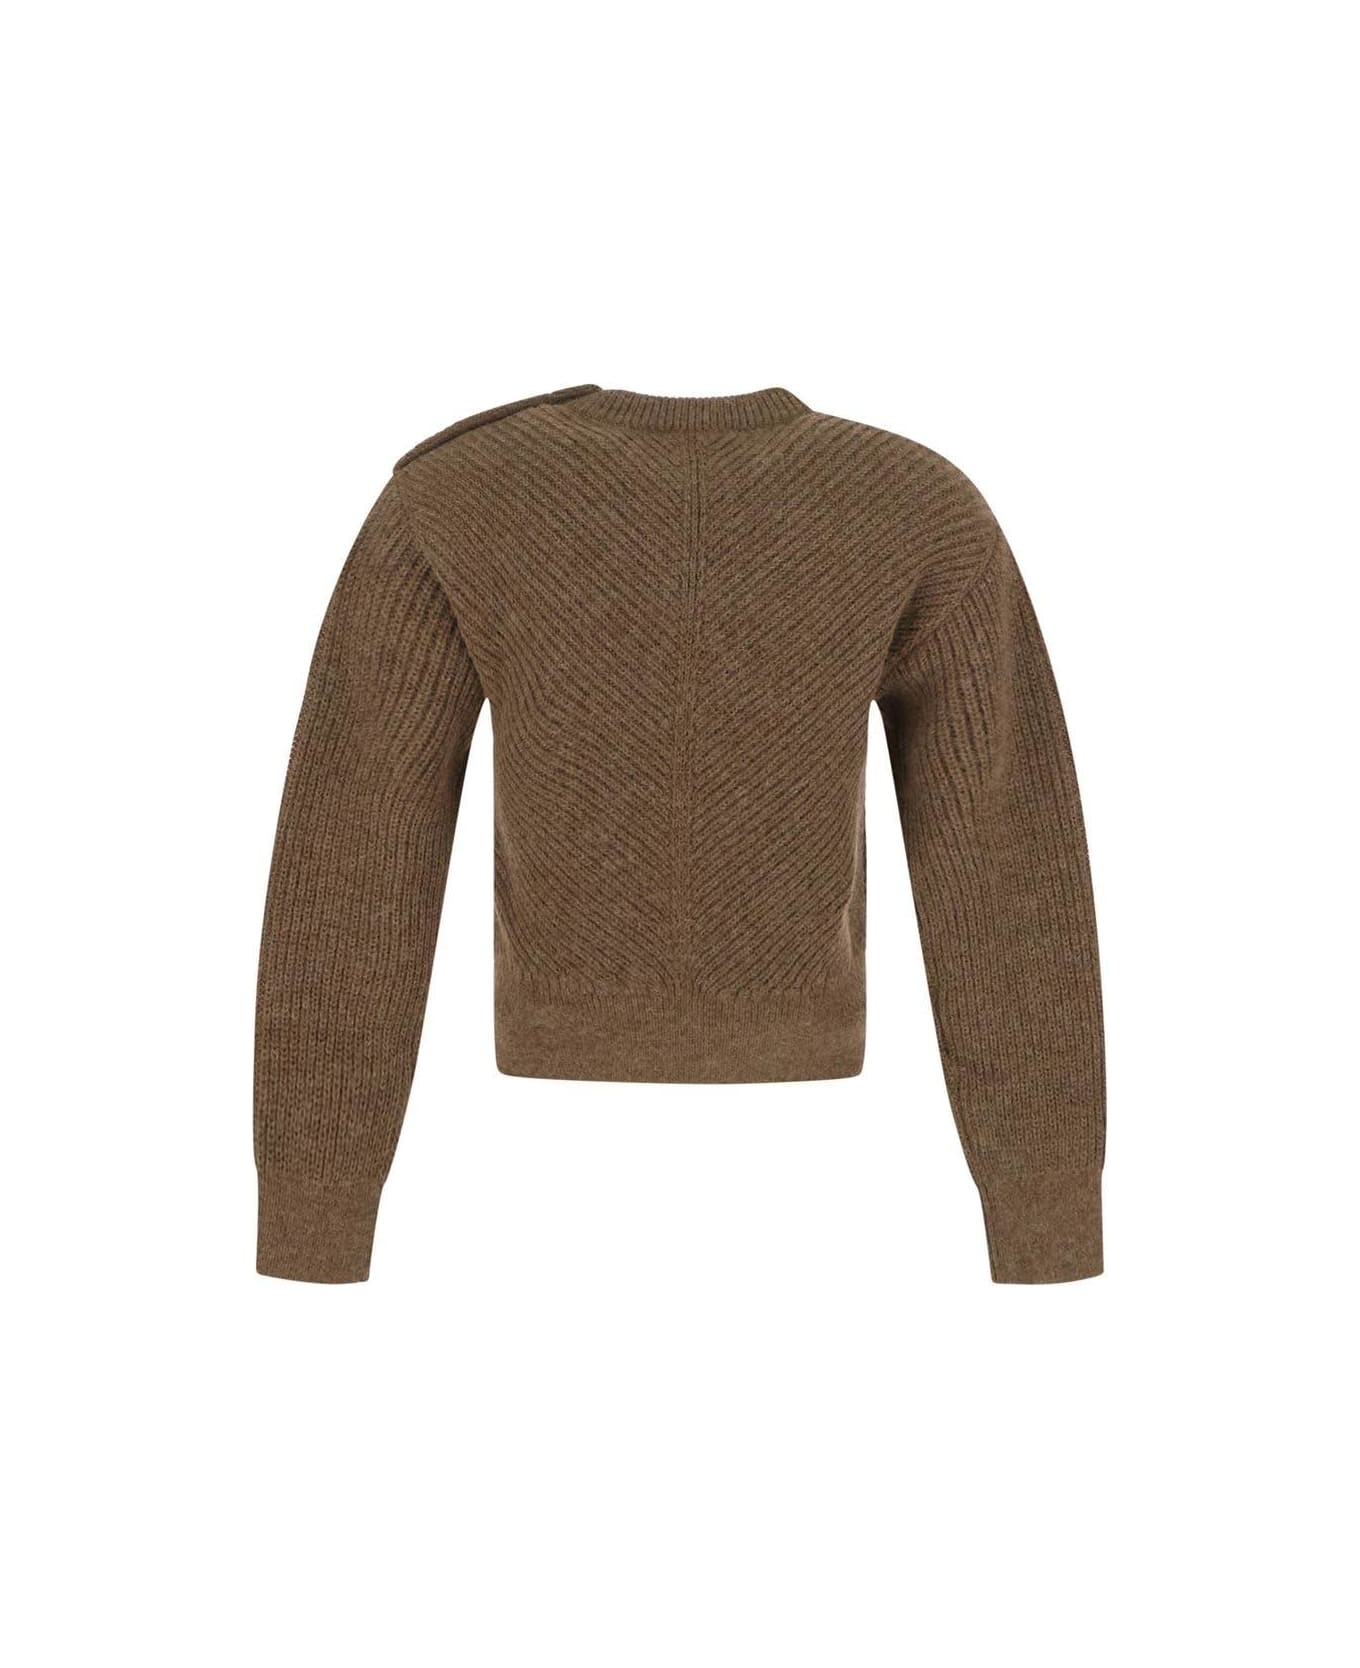 Bottega Veneta Riverbed Sweater - BEIGE